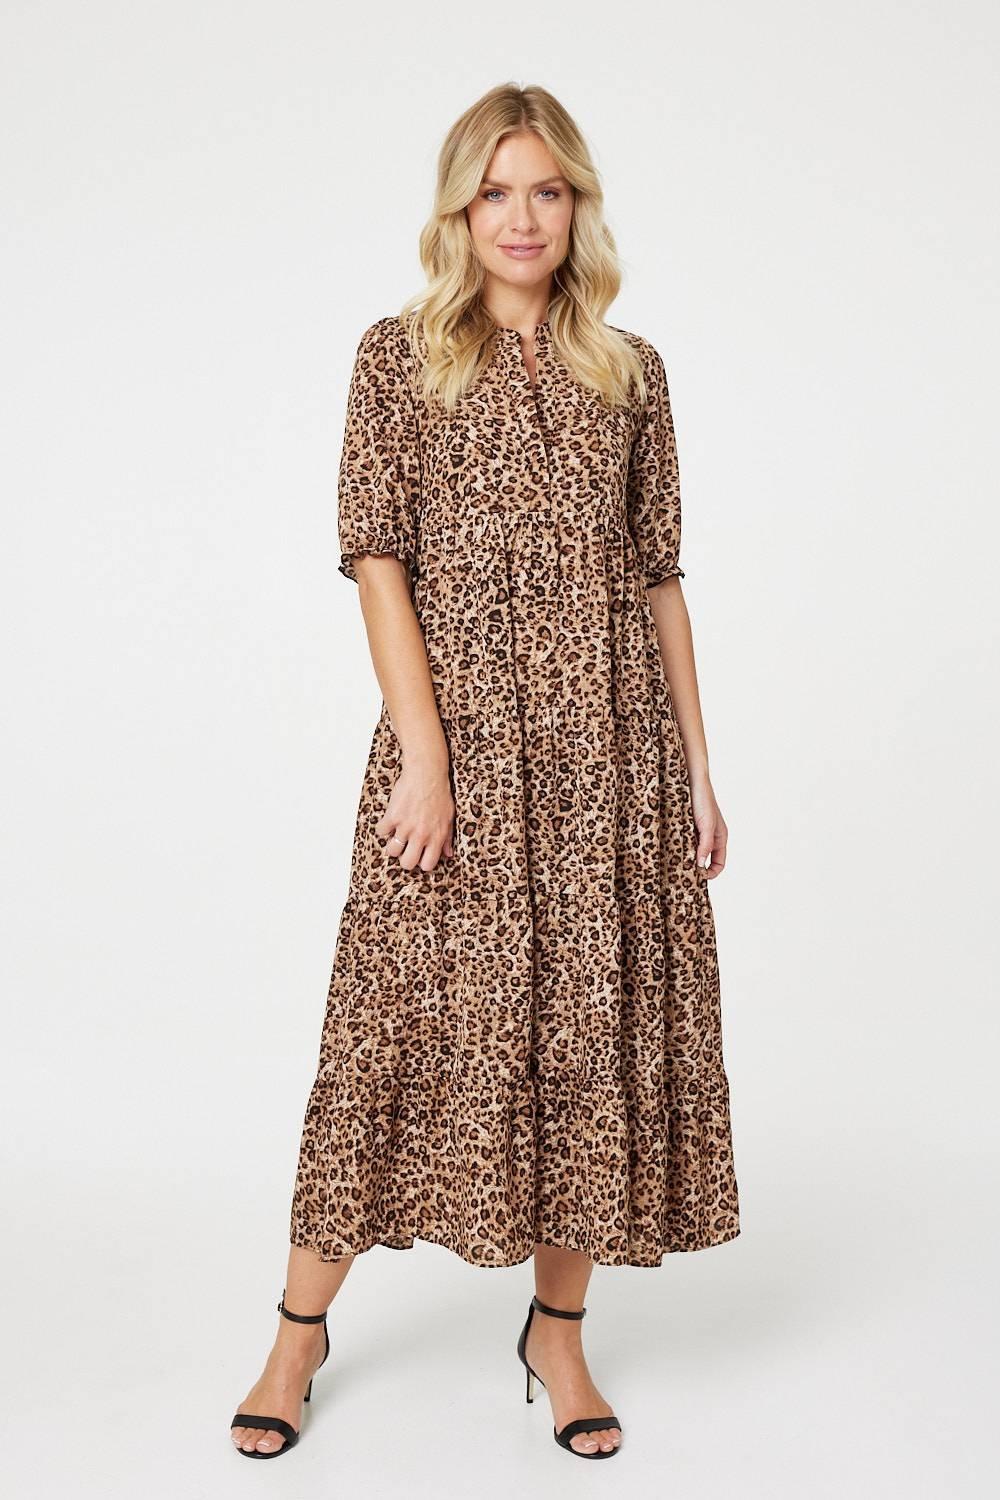 Многоуровневое платье макси с леопардовым принтом Izabel London, коричневый многоярусная юбка макси guess jeans w1gd1awdxm0g64e розовый 46